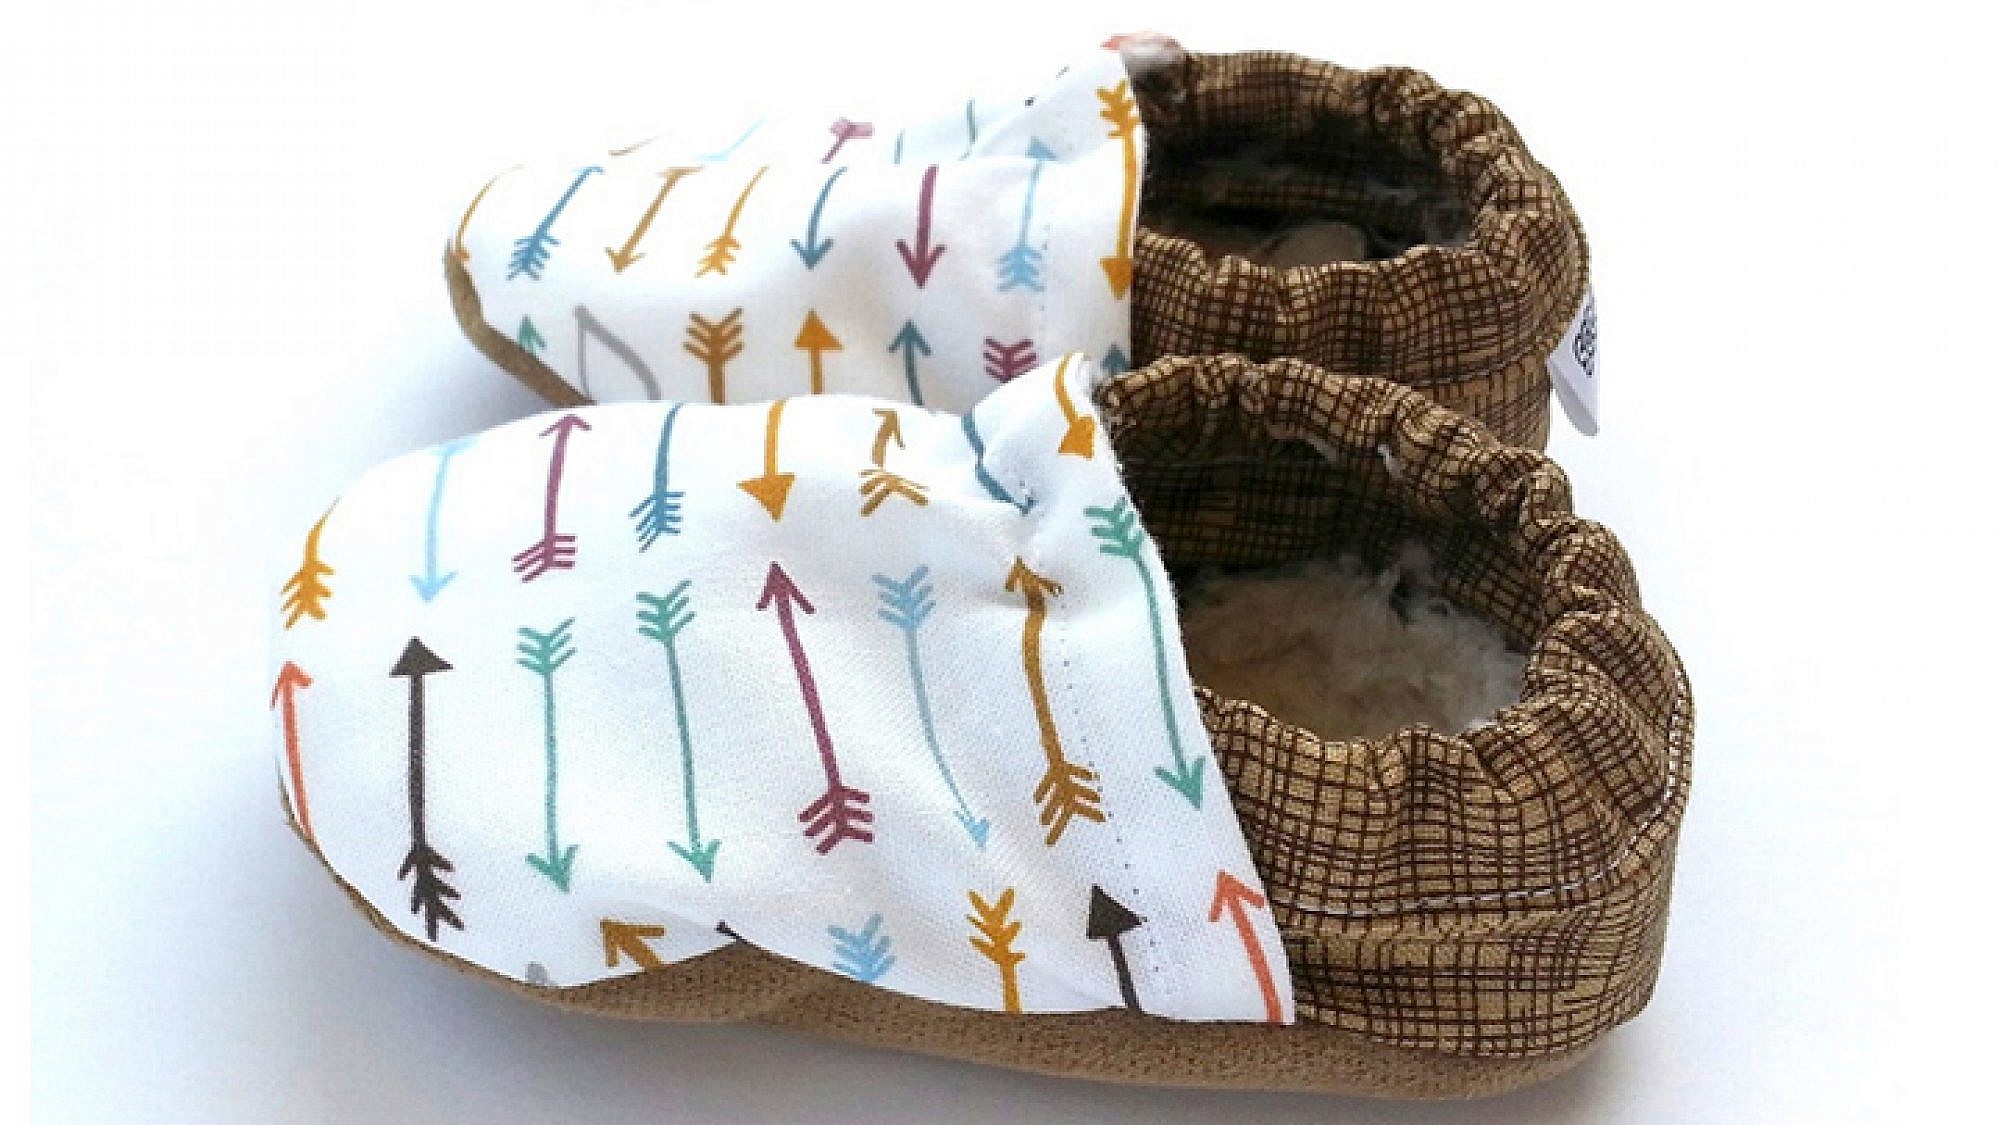 נעלי תינוקות של המותג Scotter Booties | צילום: יח"צ